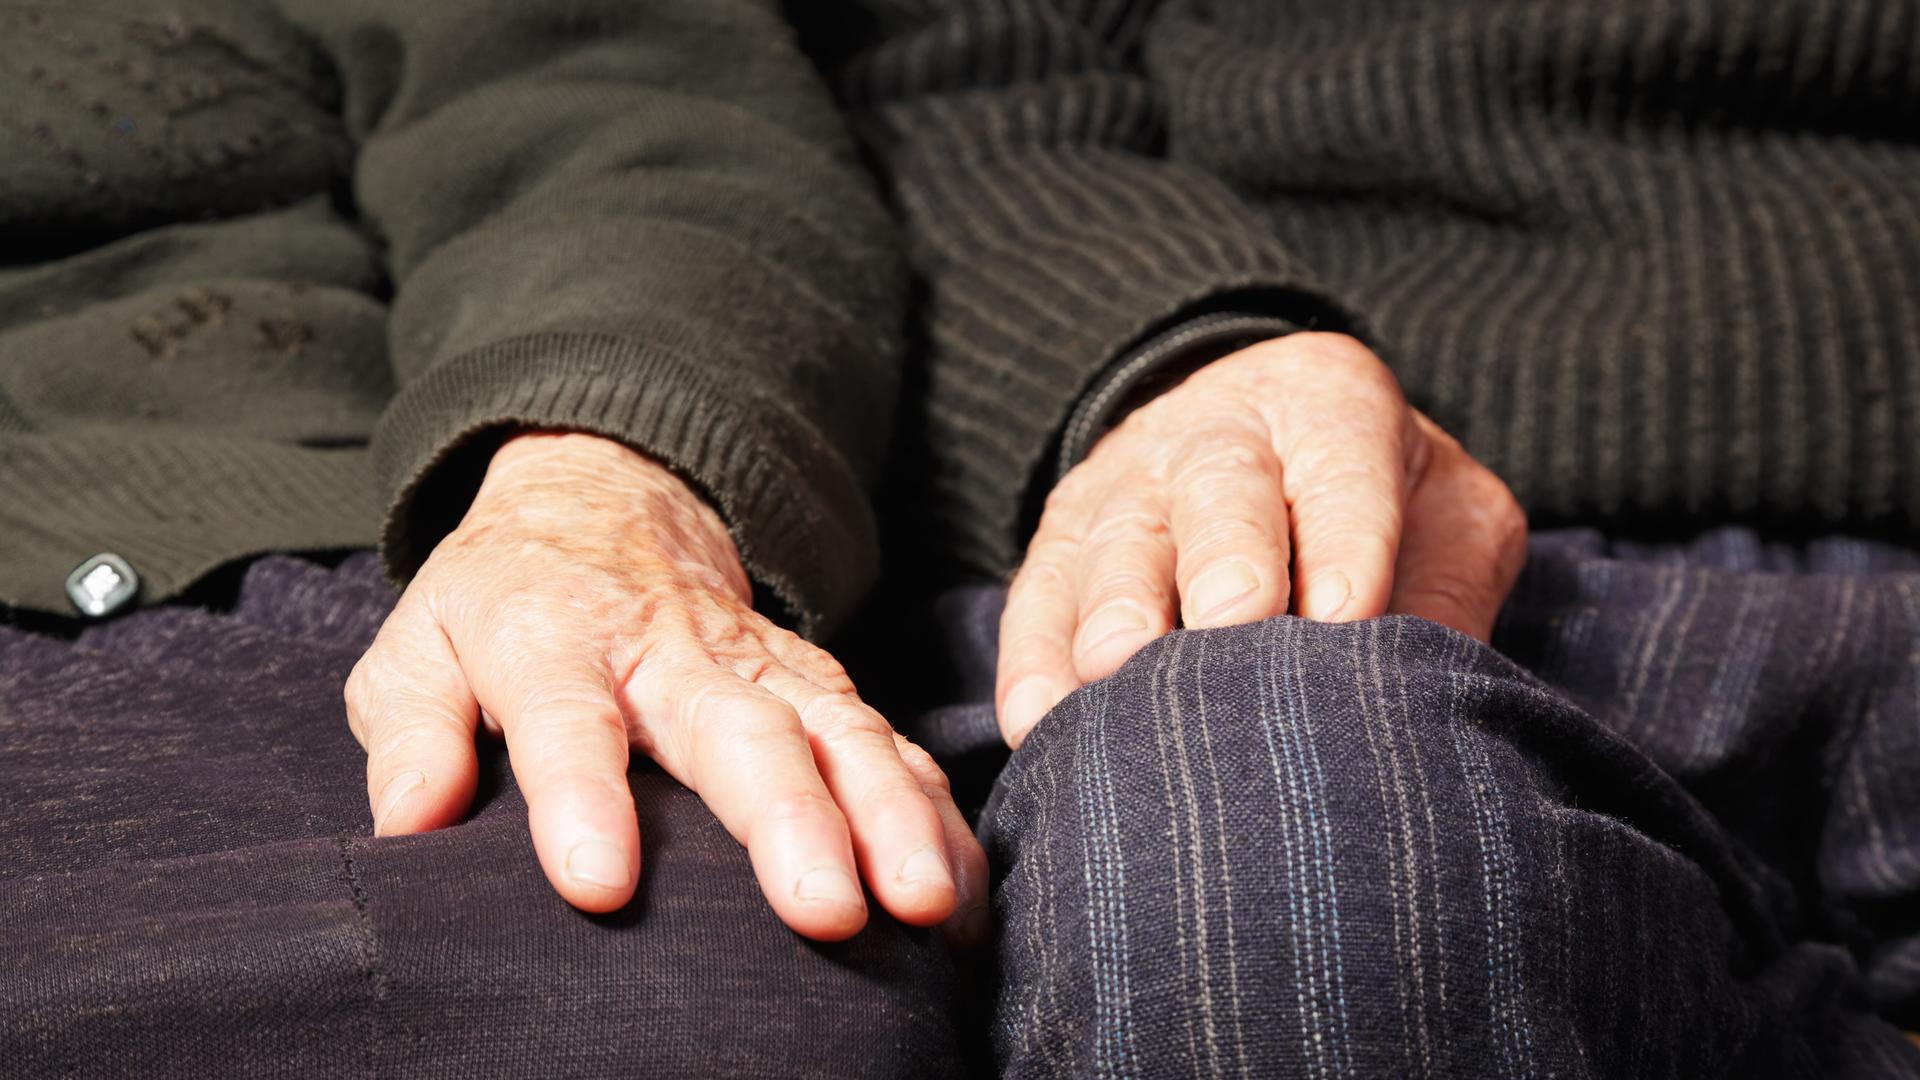 Ein älteres Paar sitzt auf dem Sofa. Nahaufnahme der Hände, die nebeneinander jeweils auf den Knien ruhen.